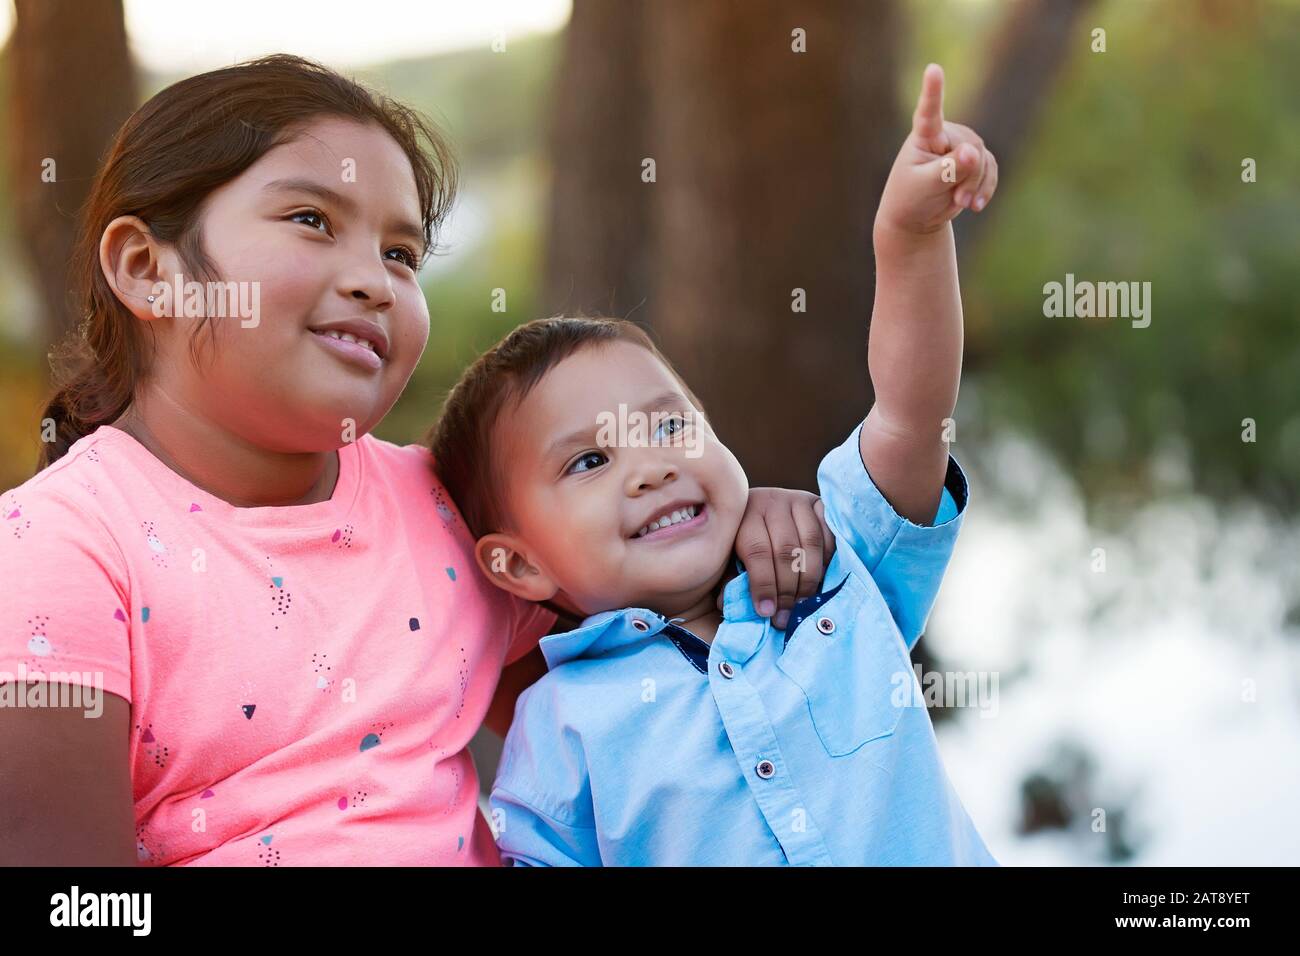 Ein glücklicher, junger Bruder blickt und zeigt zum Himmel, während seine ältere Schwester ihren Arm um den Hals legt und lächelt. Stockfoto